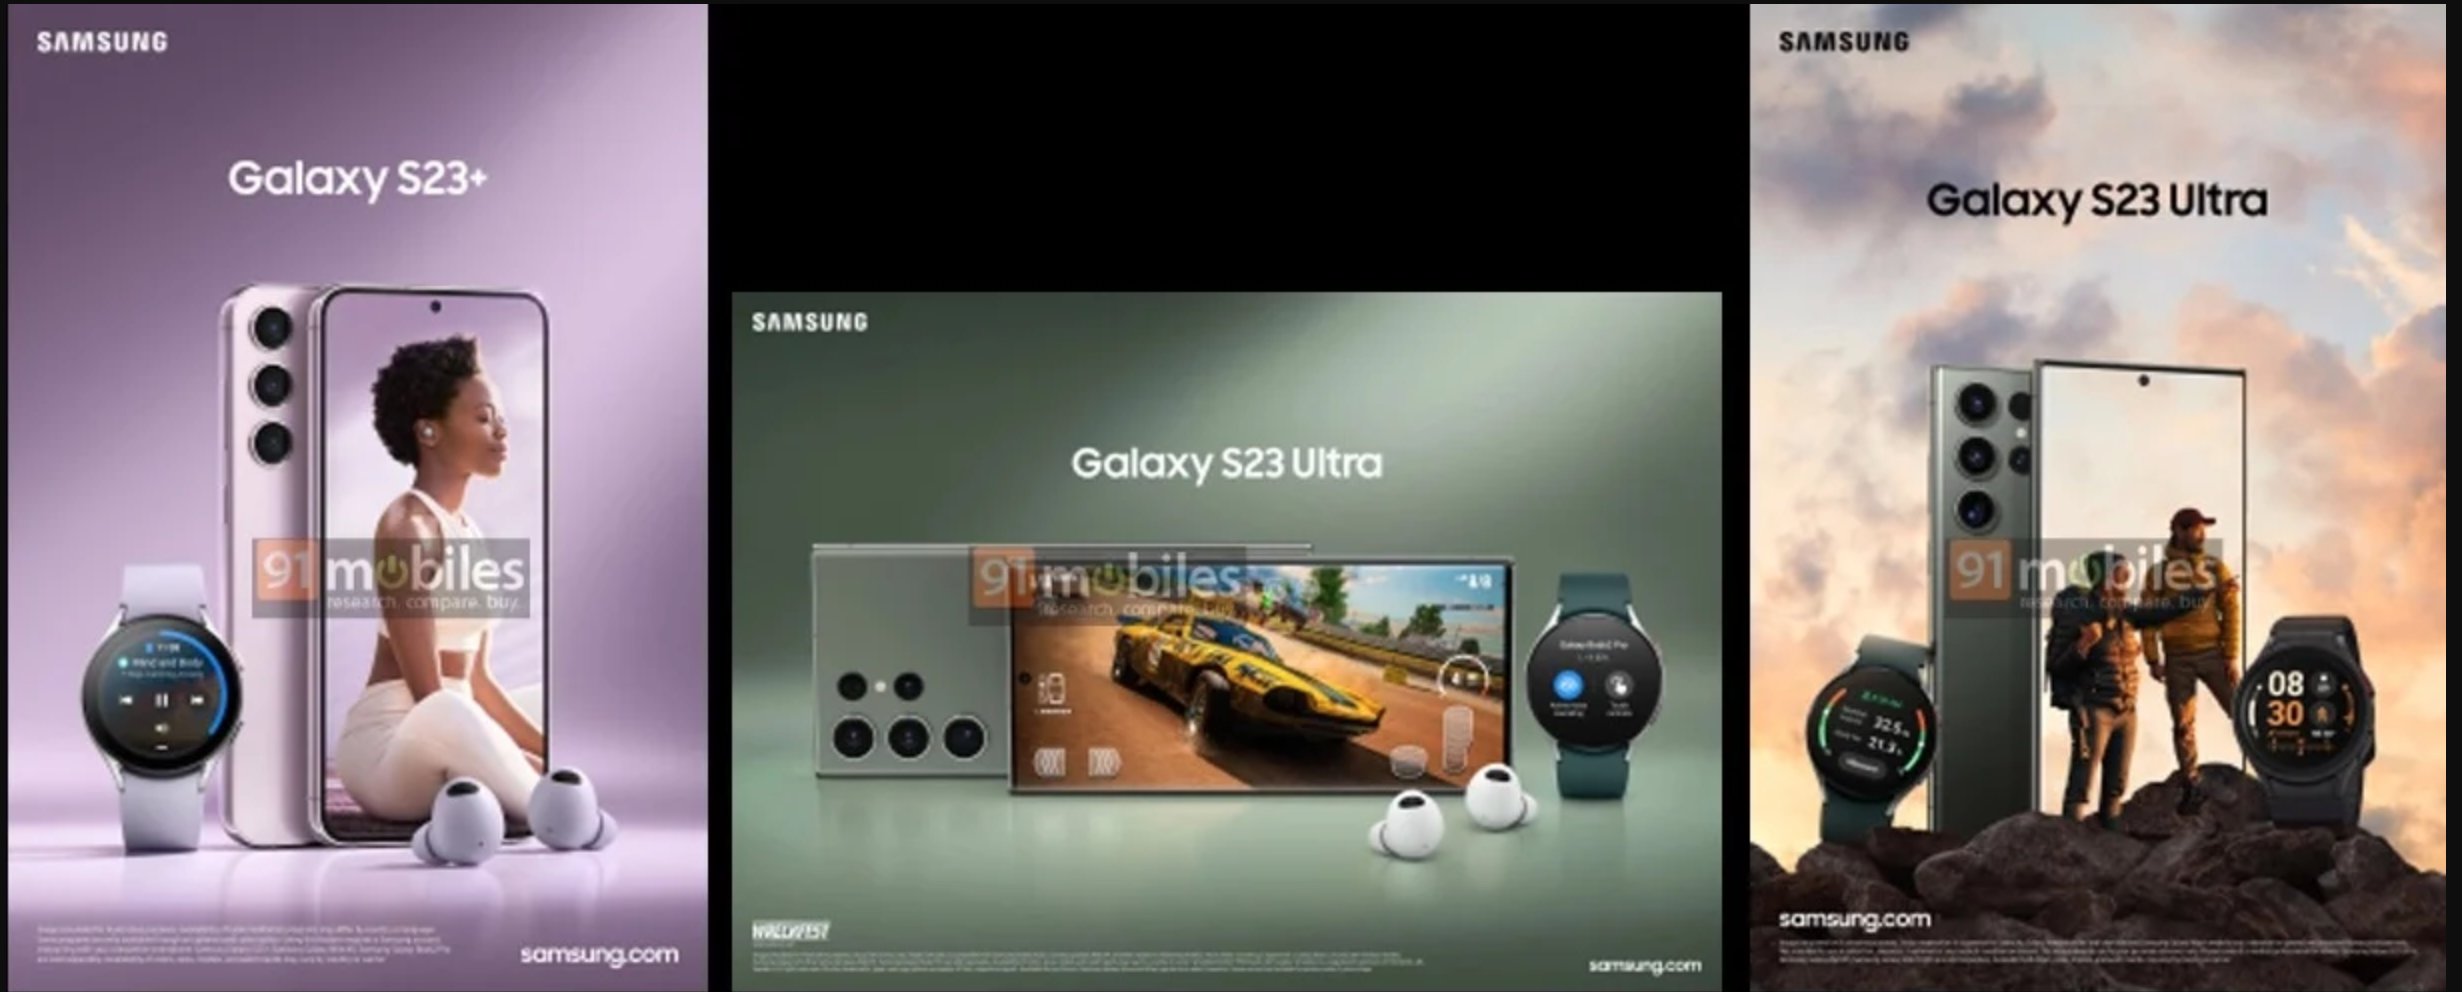 Самсунг s23 обновление 6.1. Самсунг с 23 ультра. Самсунг s23 Ultra камера. Самсунг галакси s23 ультра. Samsung Galaxy 23 Ultra.